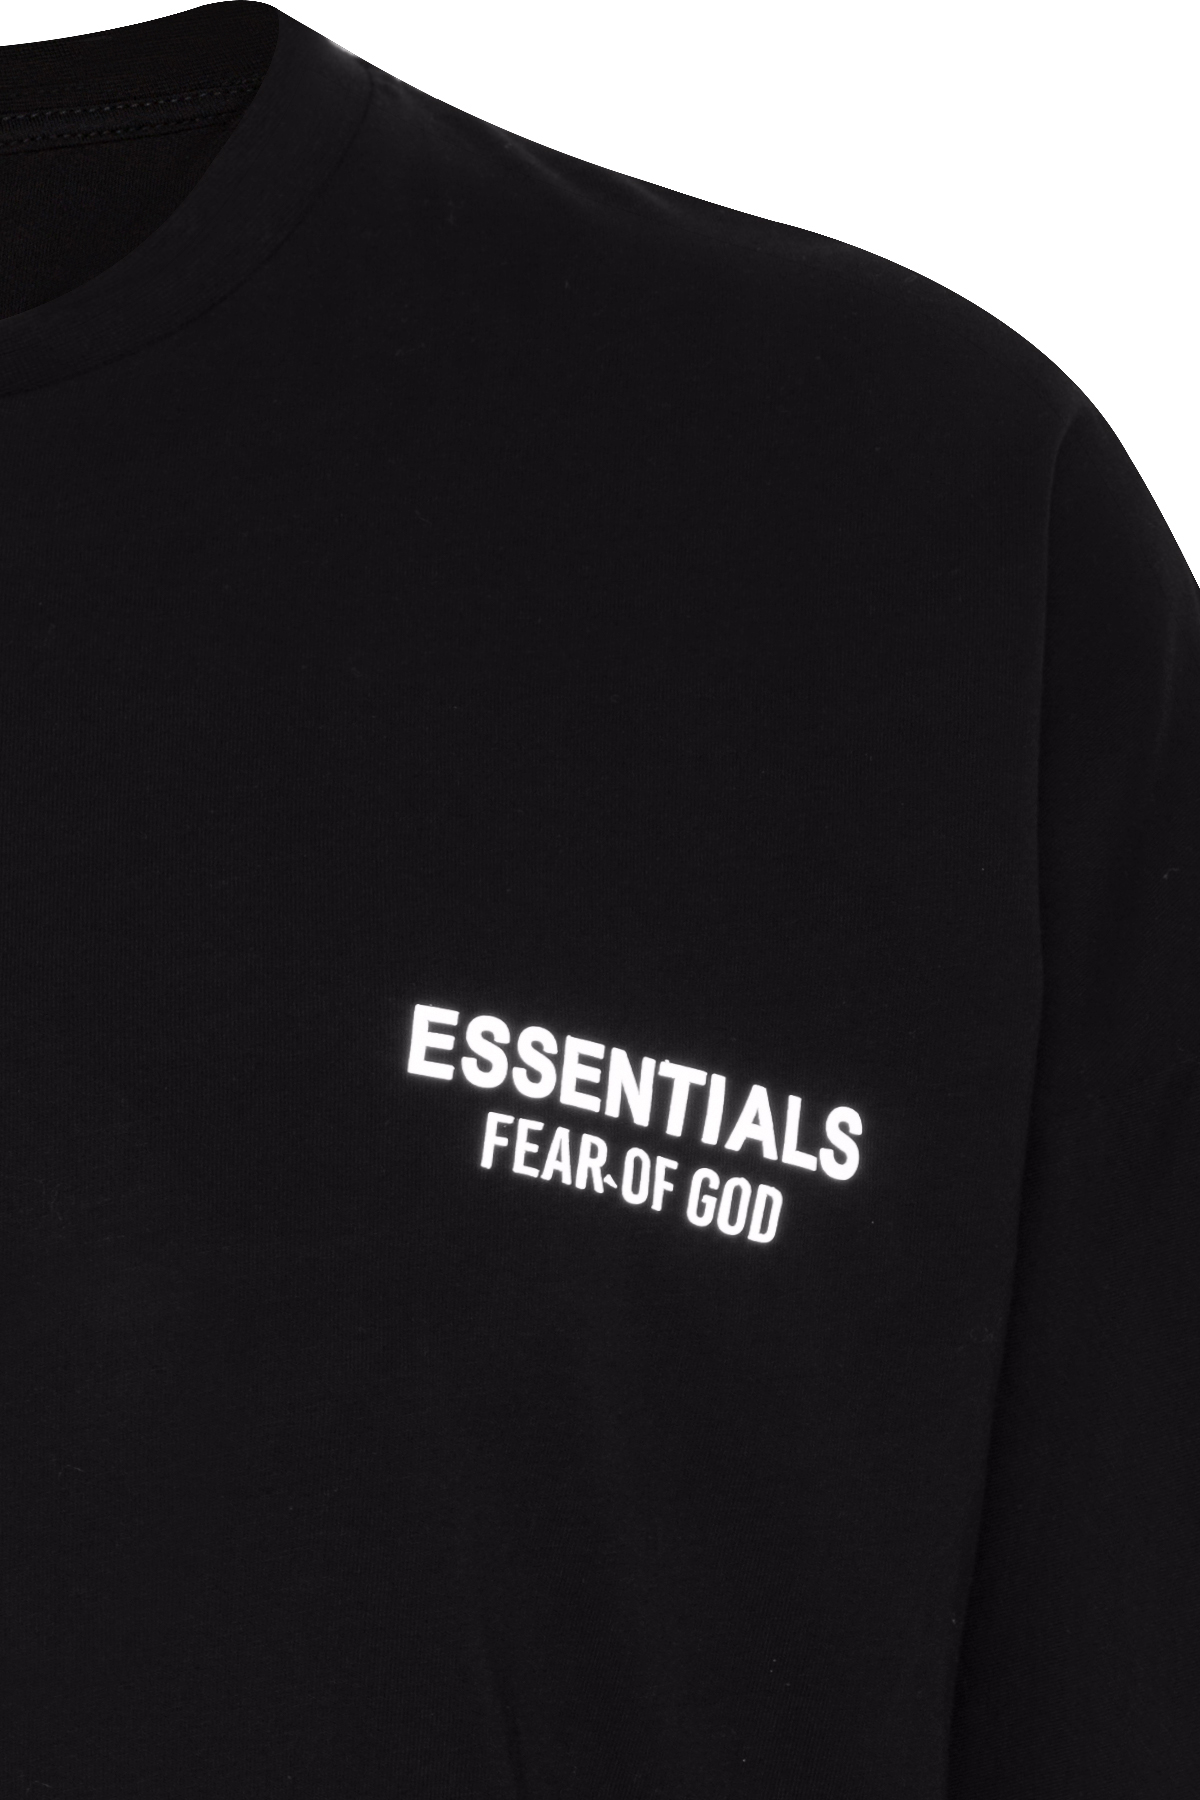 Siyah Essentials Oversize T-Shirt 2YXE2-45994-02